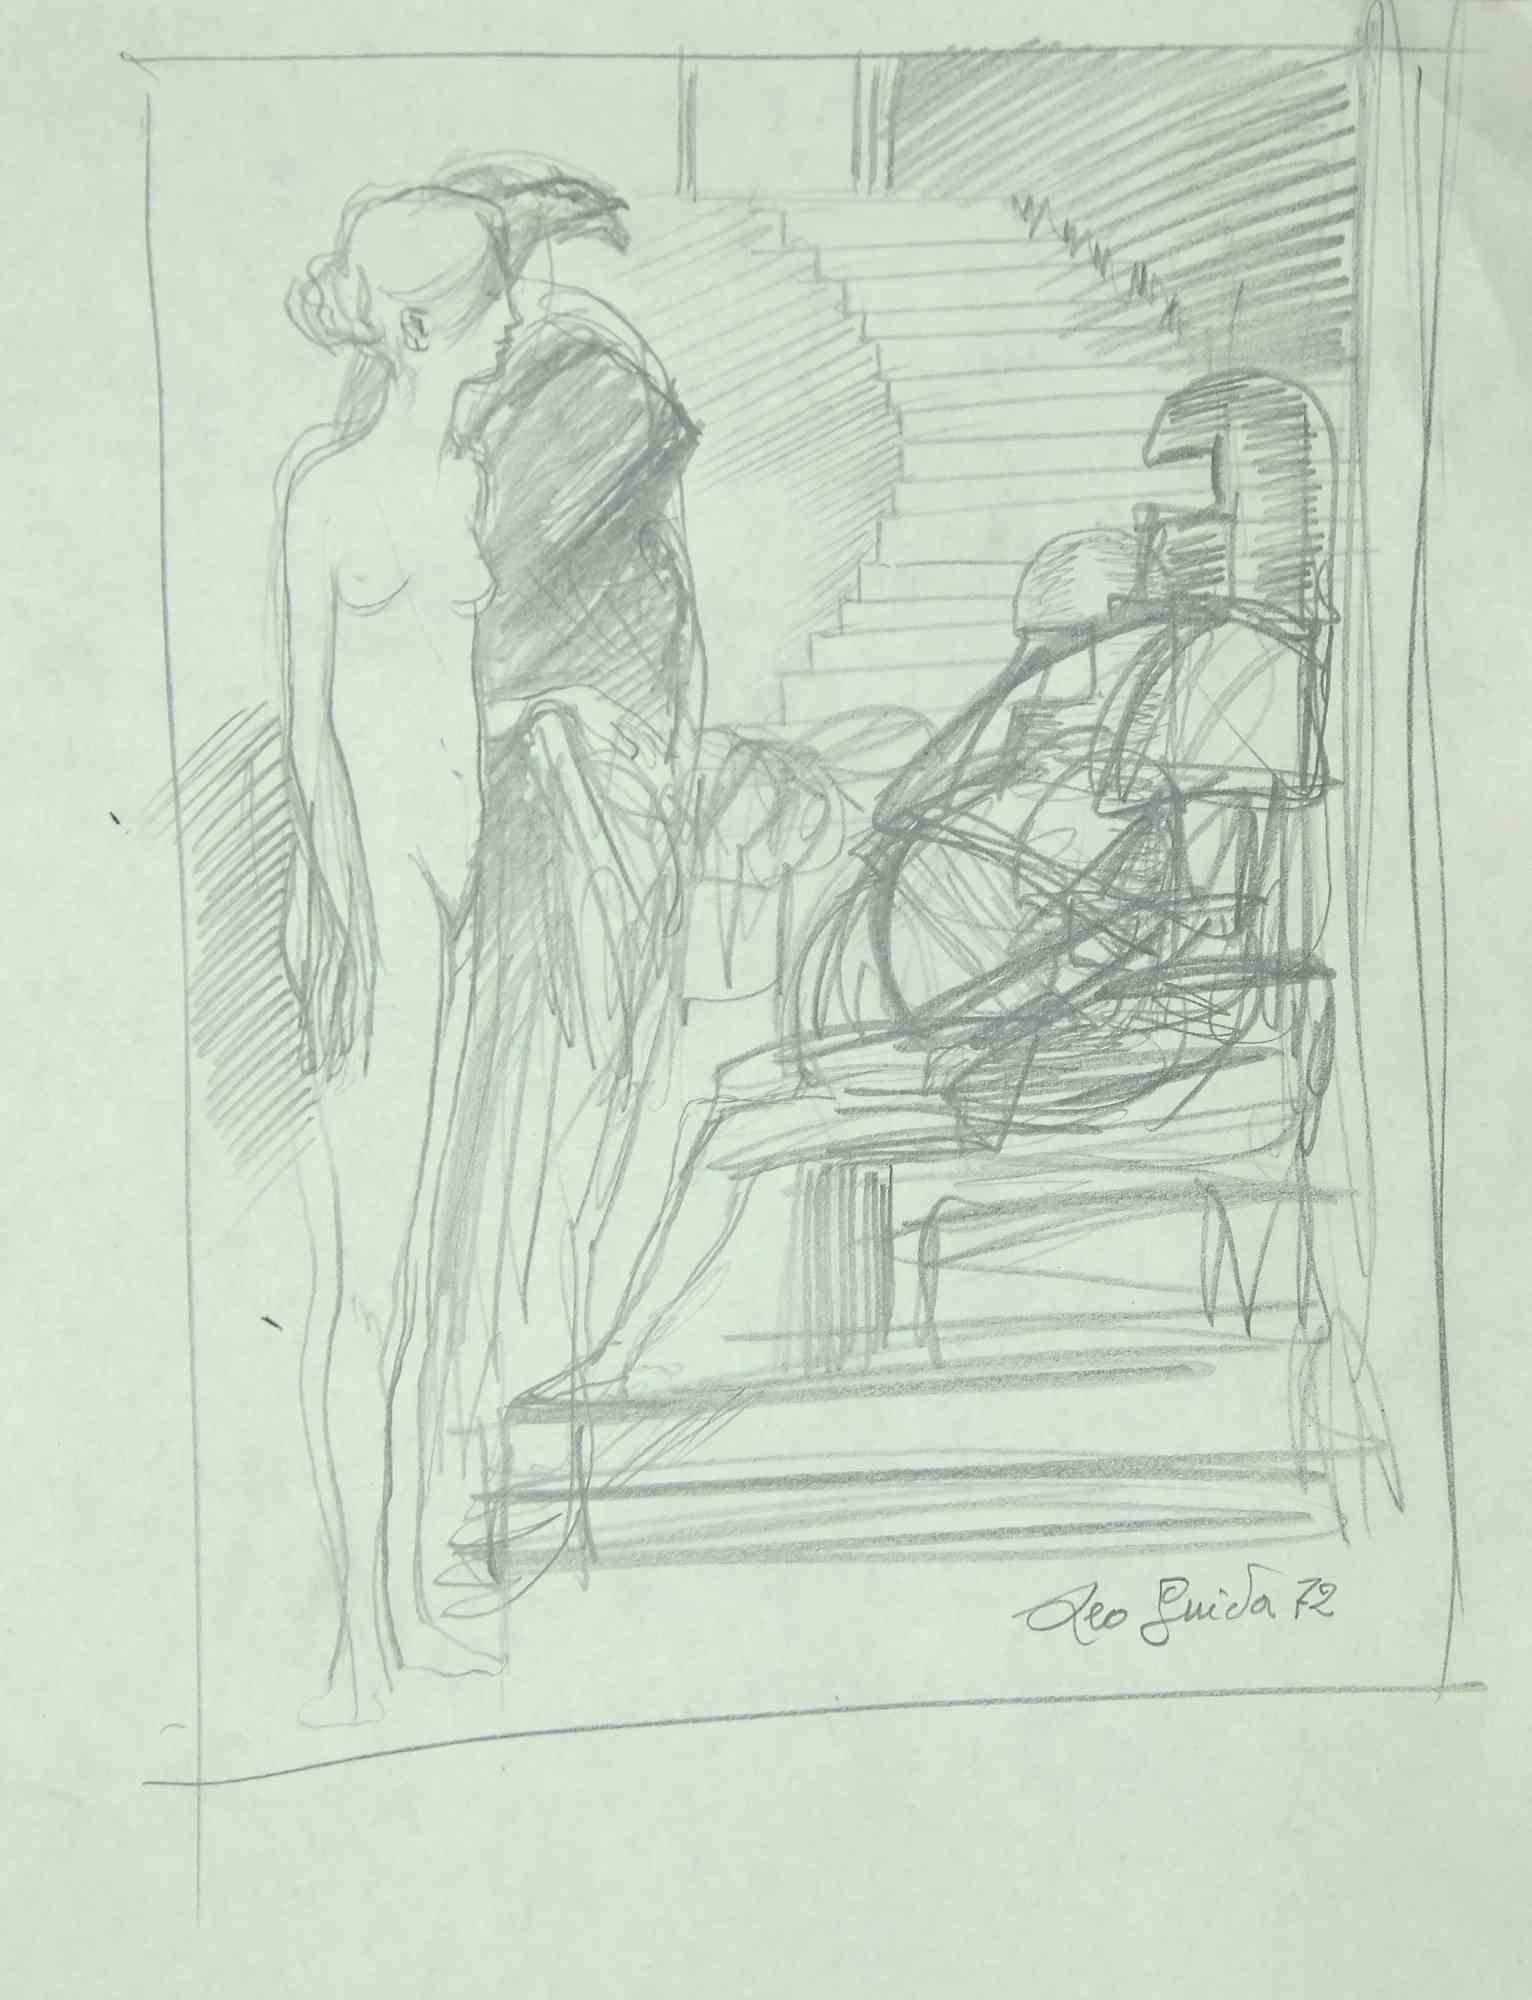 Nude est une œuvre d'art originale réalisée  en 1972 par l'artiste contemporain italien  Leo Guida  (1992 - 2017).

Dessin original au crayon sur papier couleur ivoire.

Signé et daté à la main dans les marges inférieures.

Cette œuvre d'art